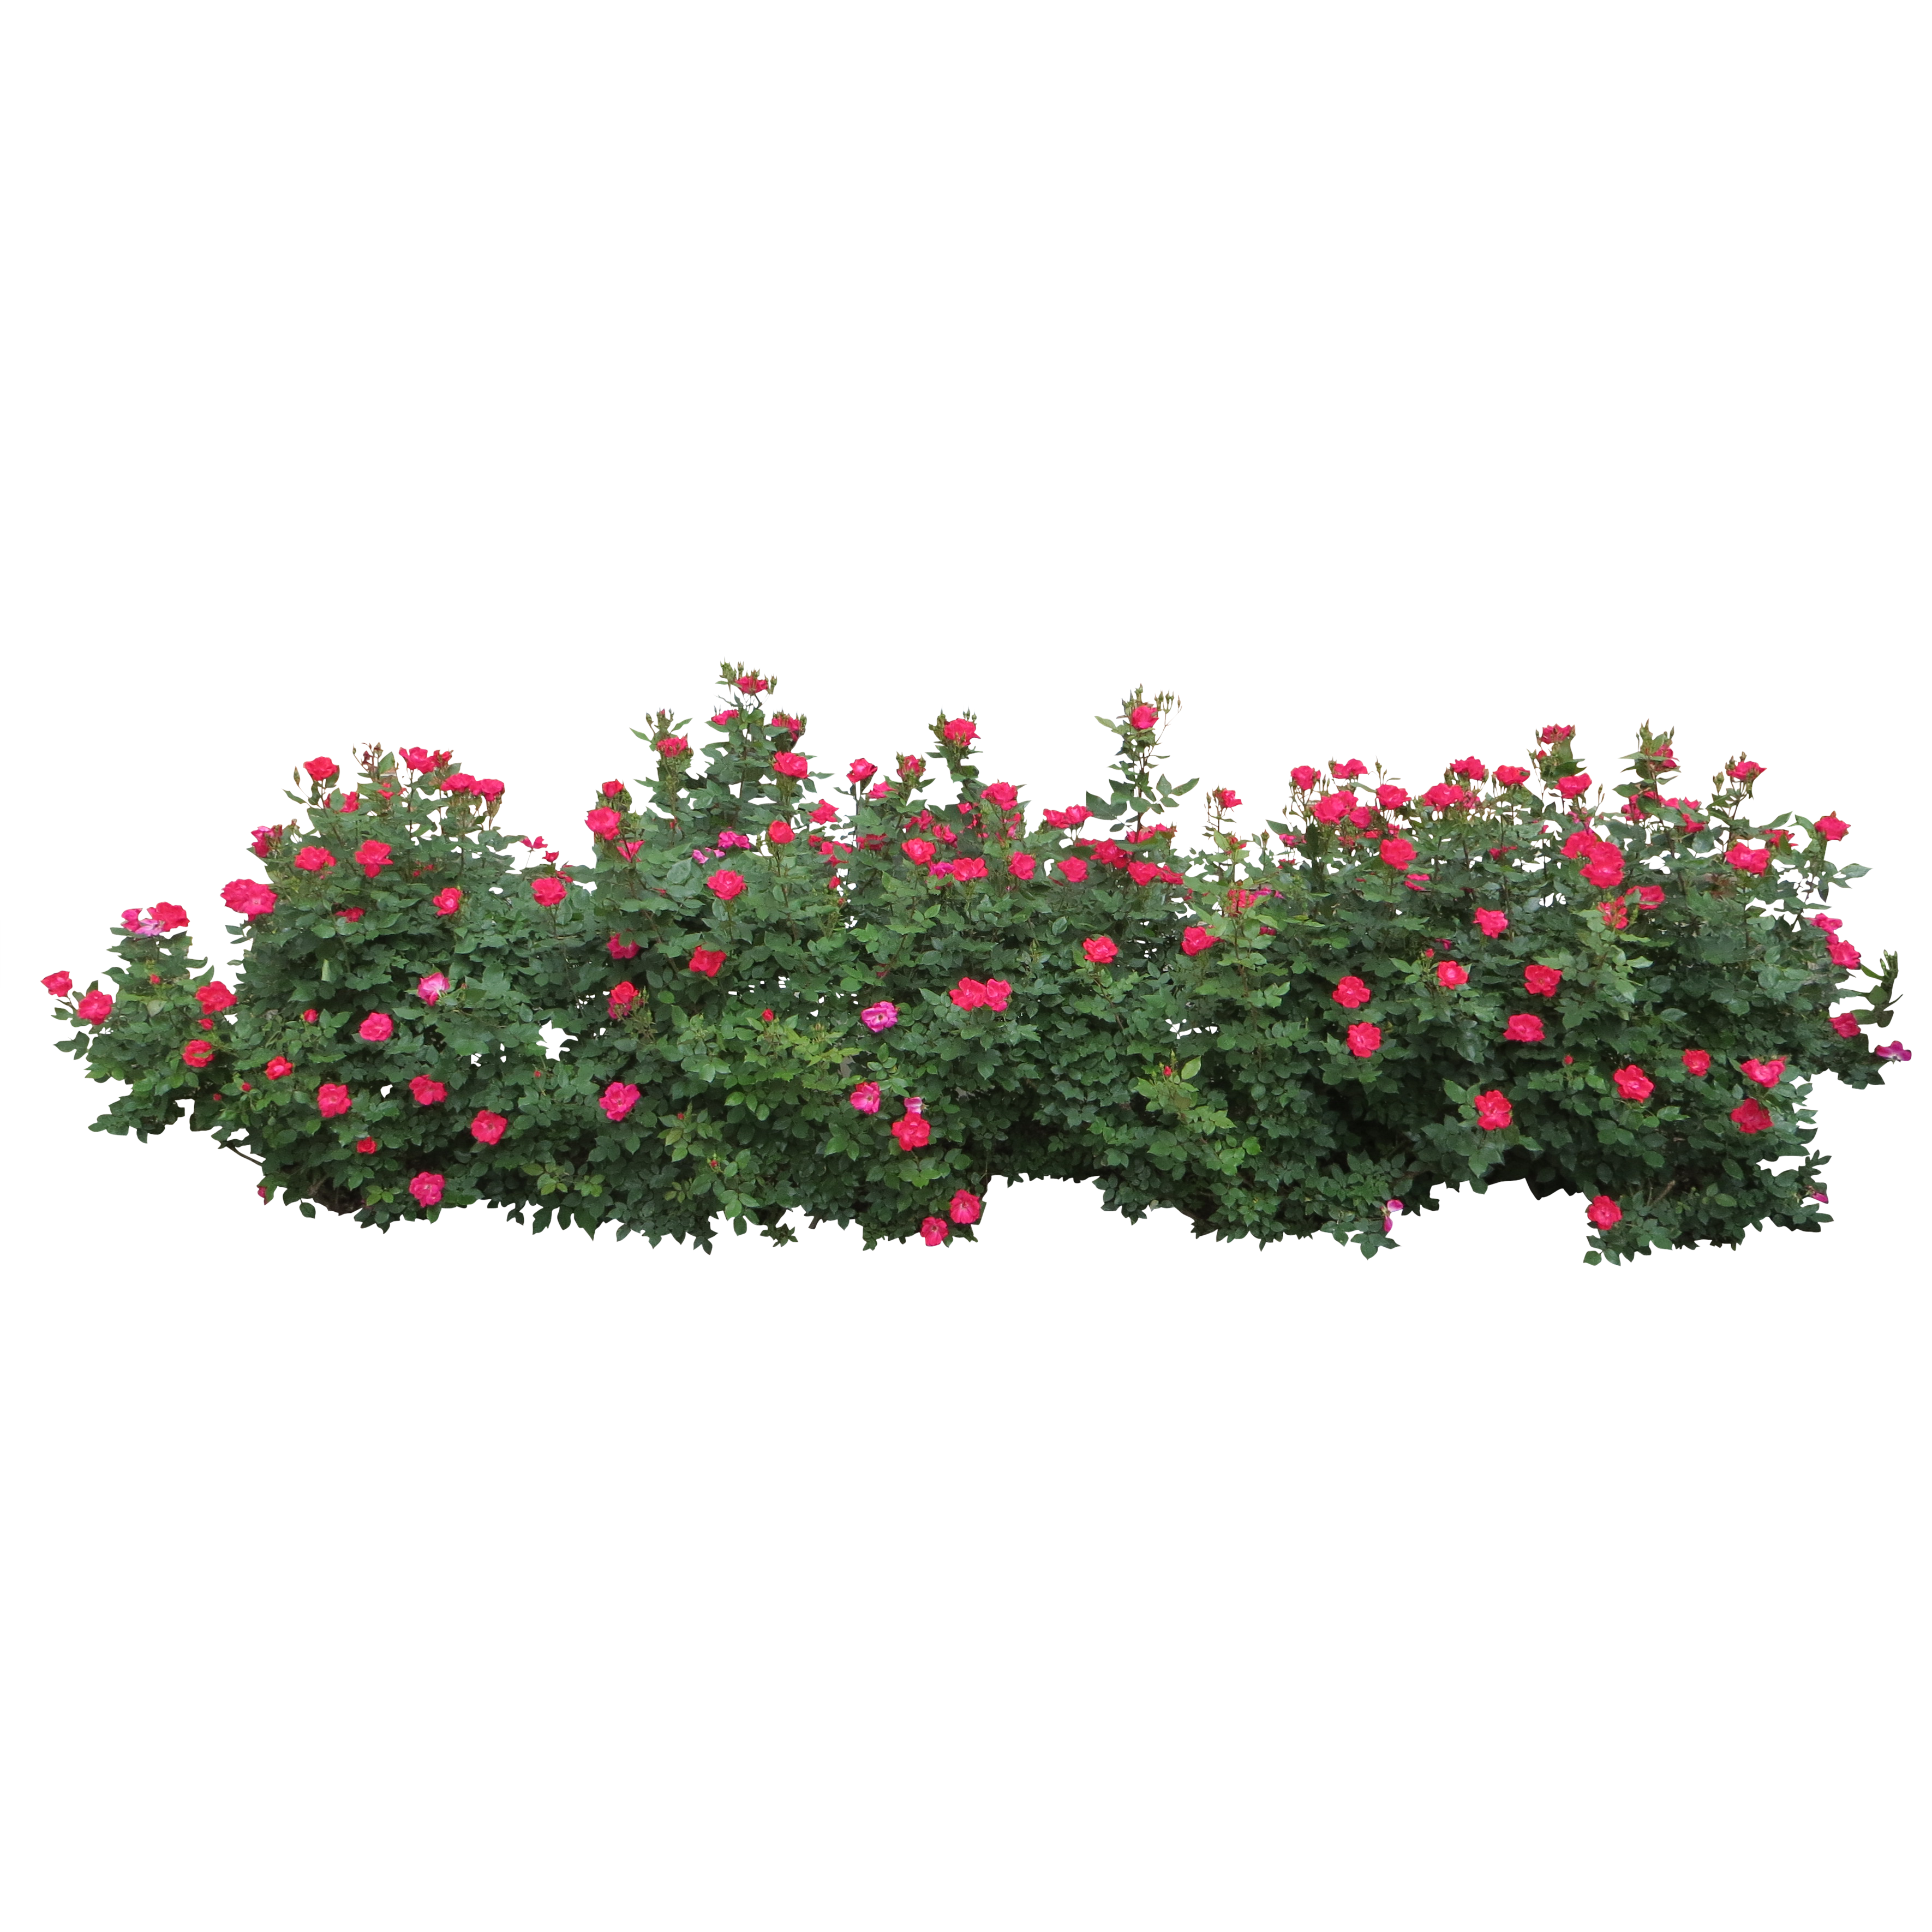 Clipart rose shrub. Centifolia roses tree clip